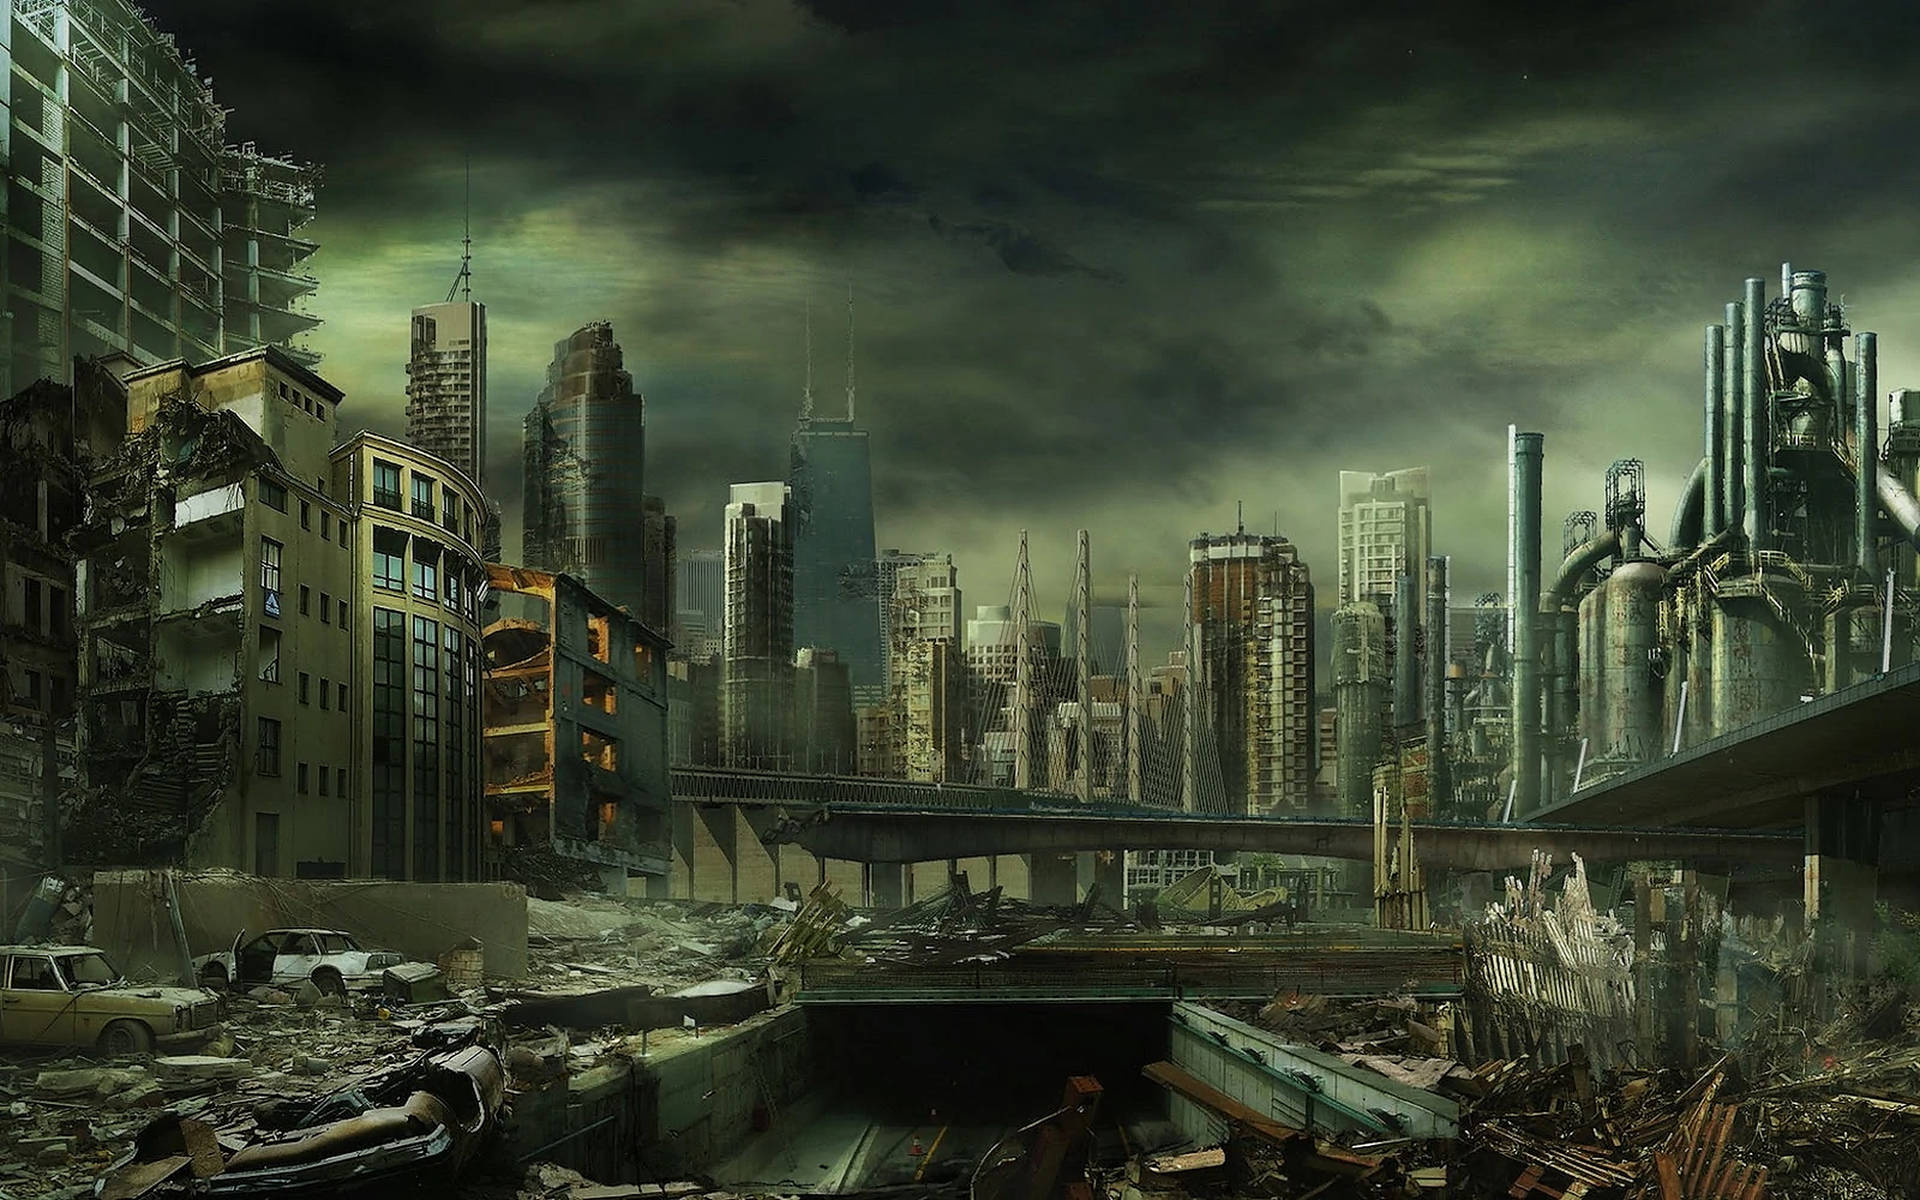 Dark Apocalyptic City Background